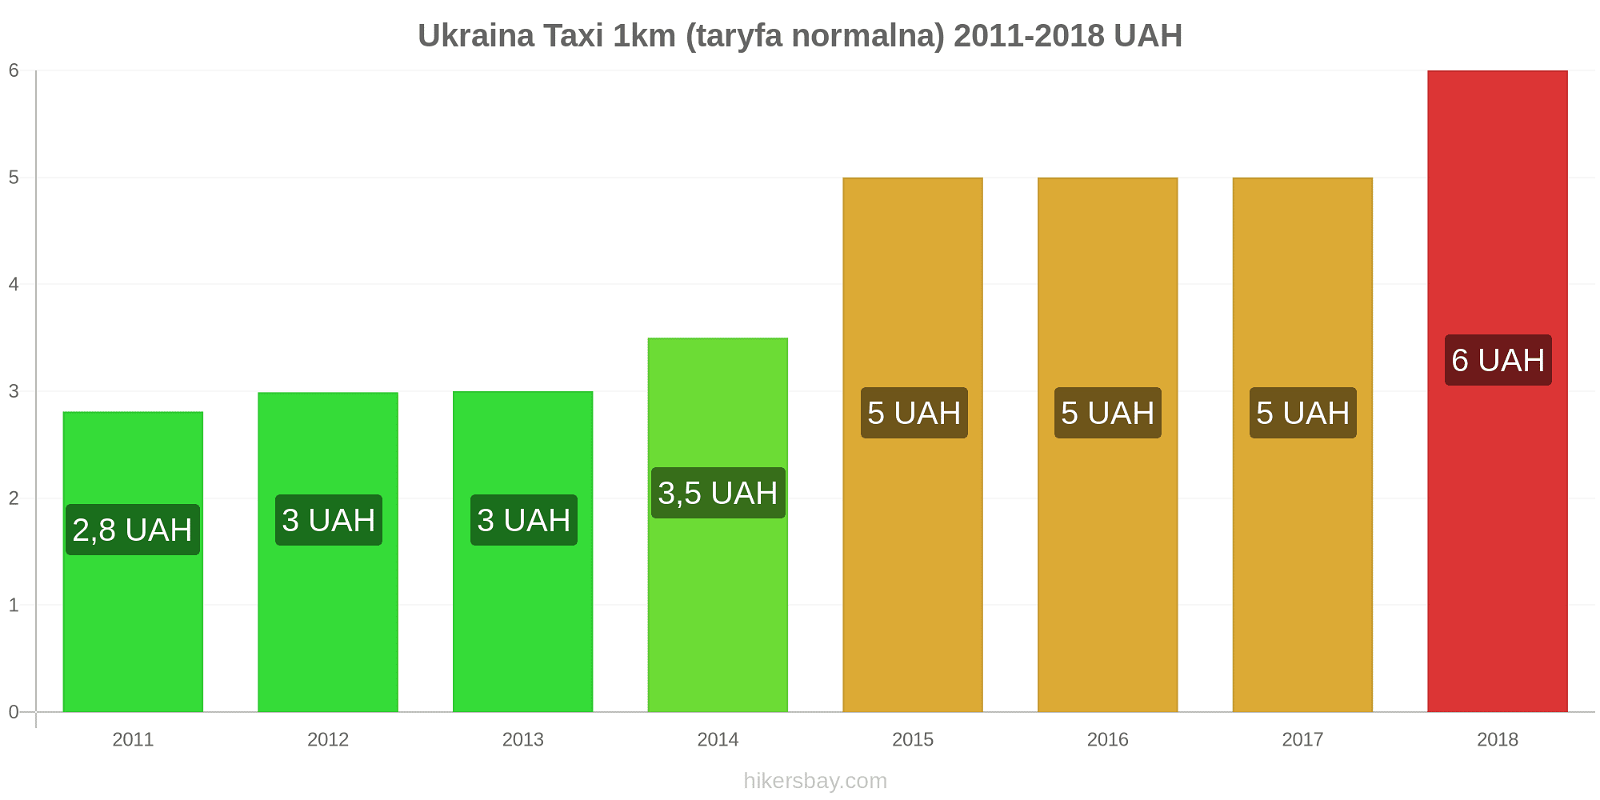 Ukraina zmiany cen Taxi 1km (taryfa normalna) hikersbay.com